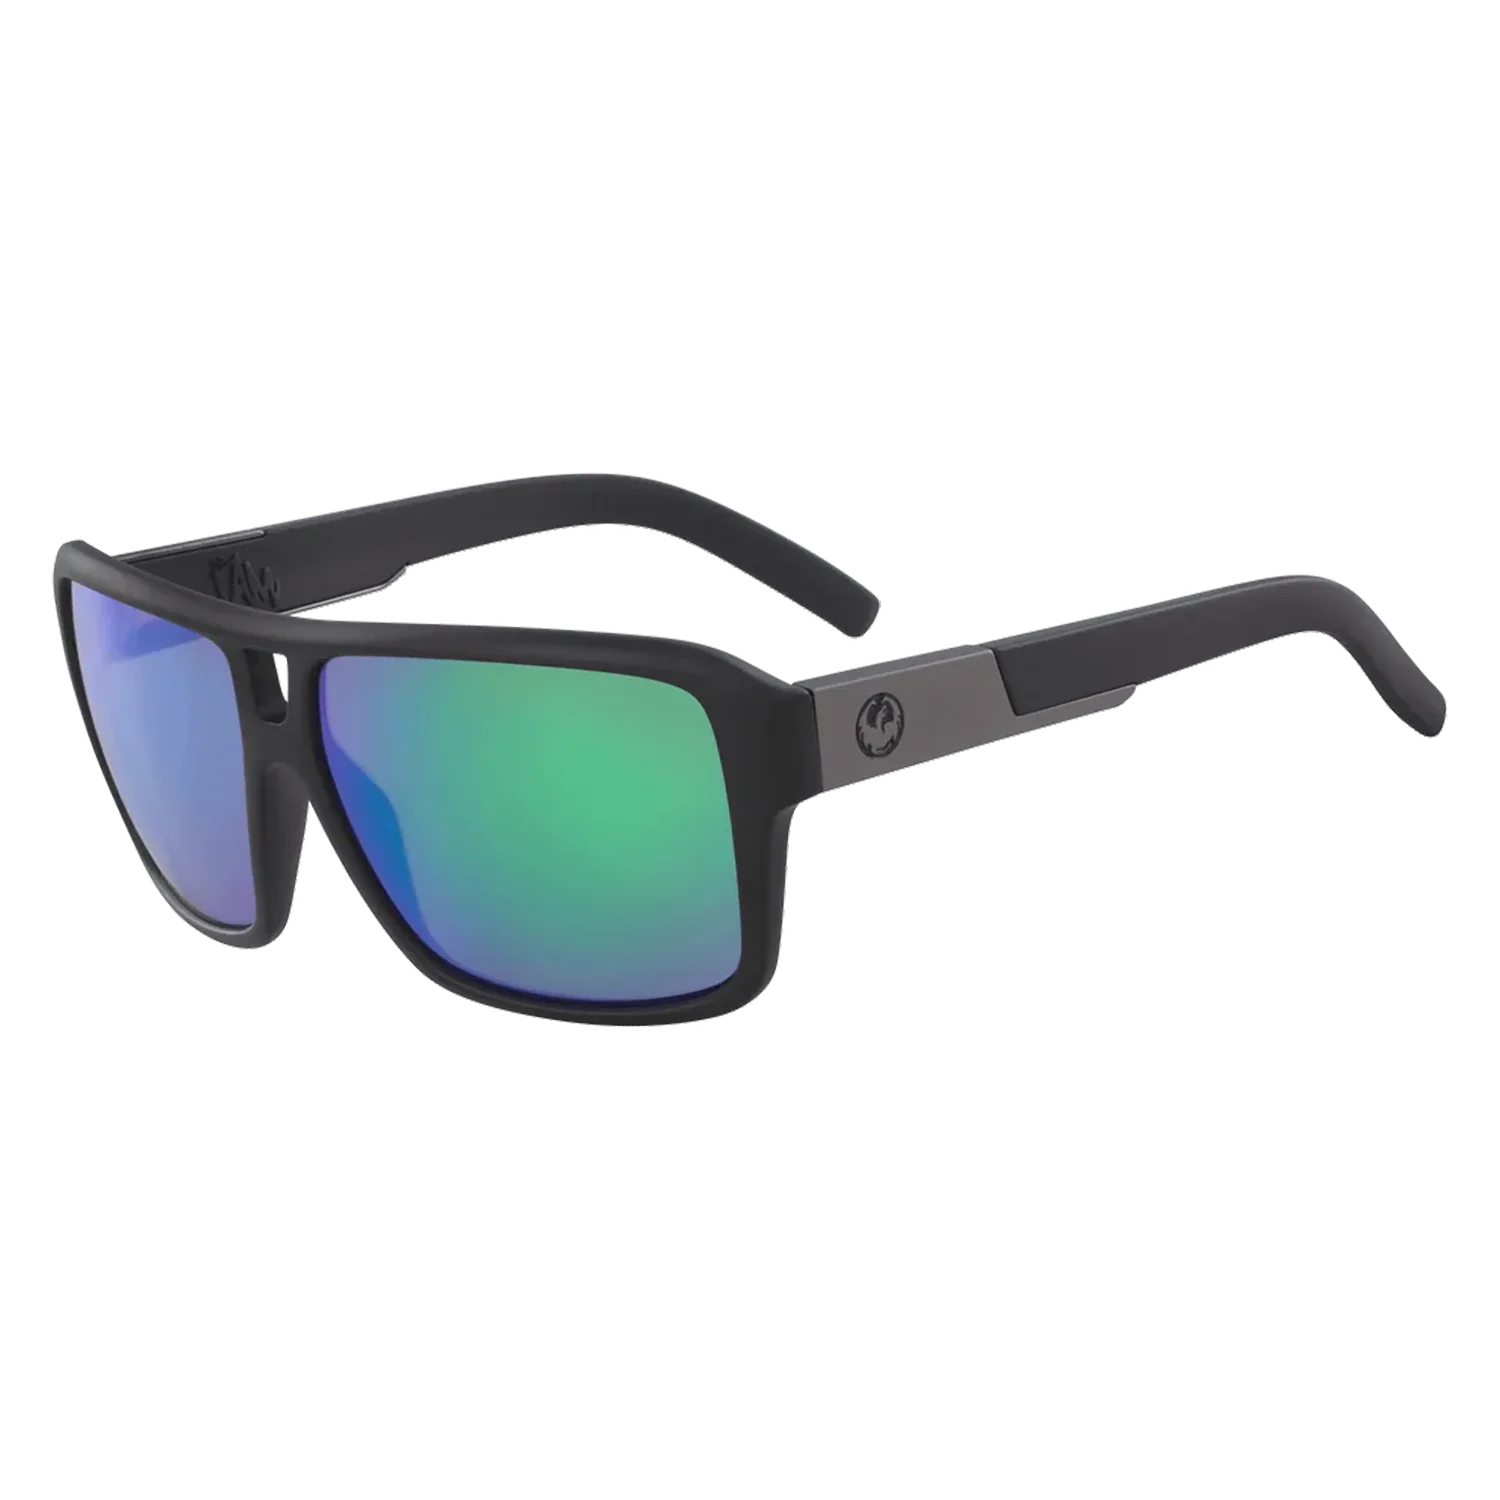 'Dragon The Jam LumaLens Sunglasses' in 'Matte Black W/ Lumalens Green Ion' colour